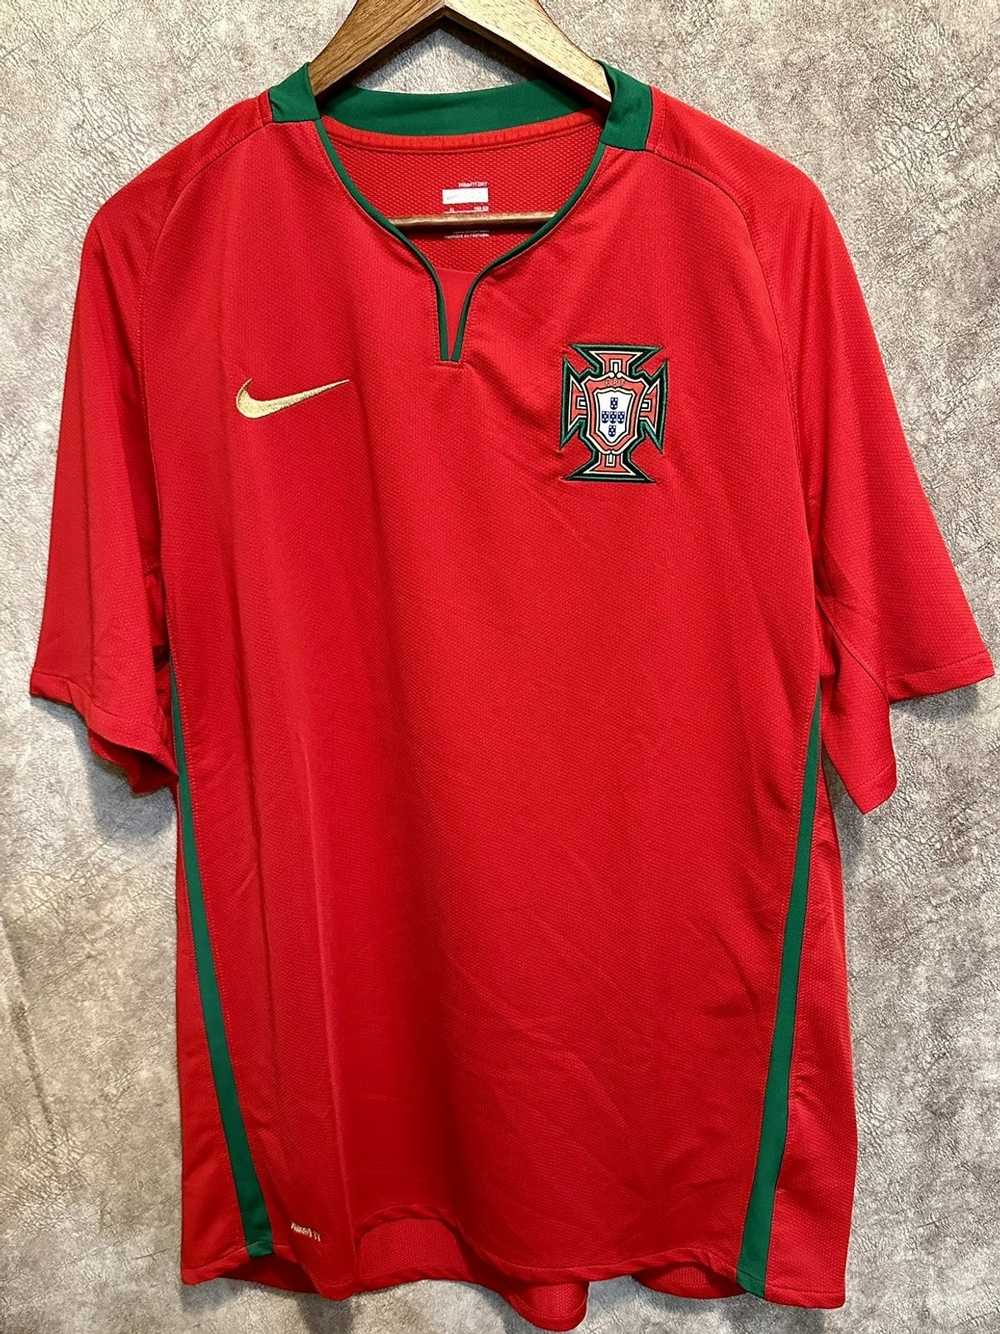 Nike × Soccer Jersey × Vintage Nike Portugal vint… - image 1